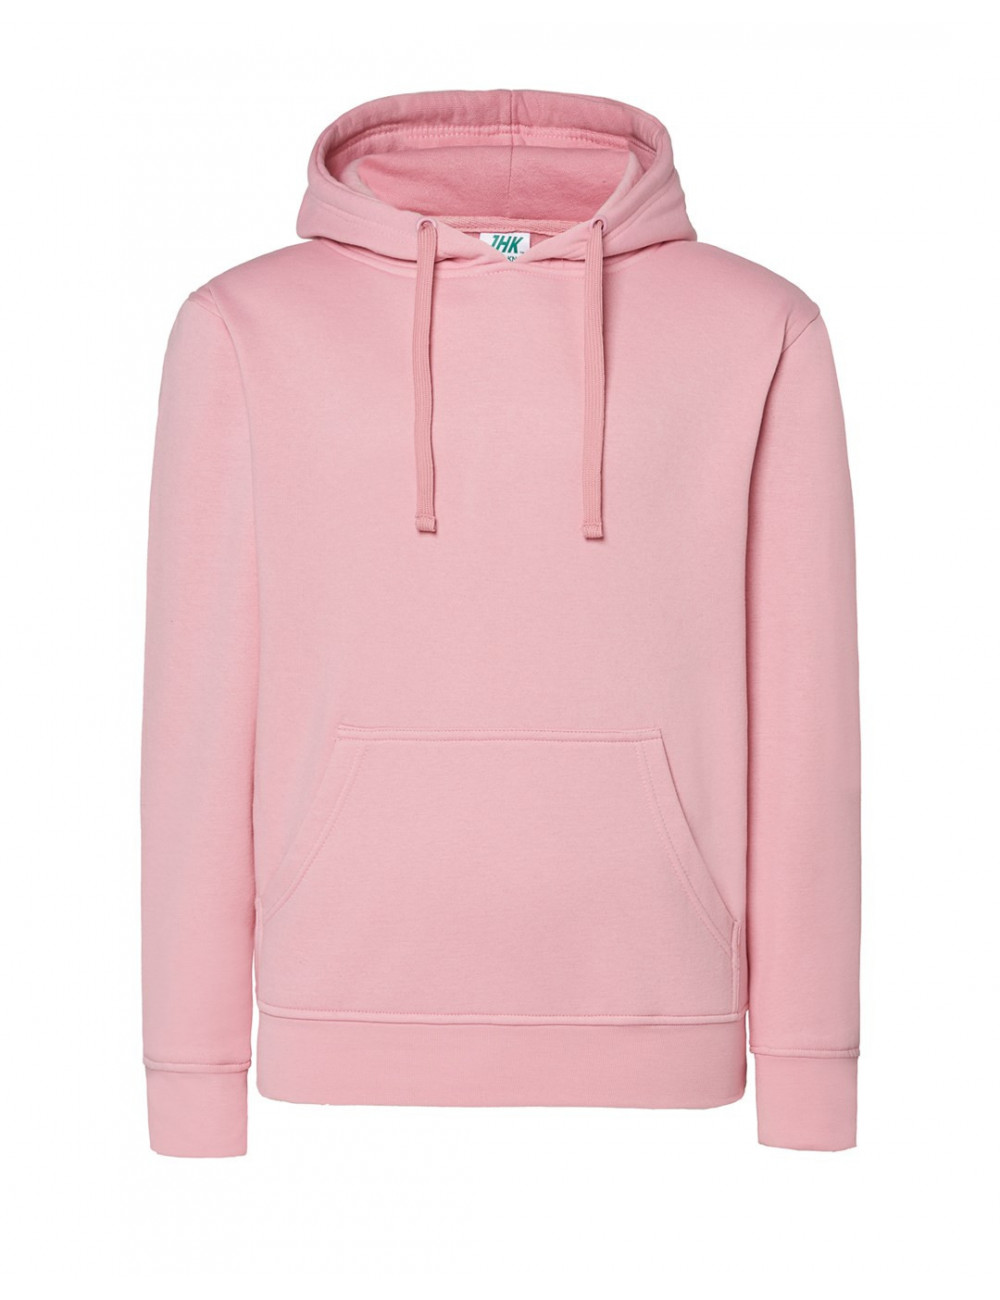 Women`s sweatshirt swul kng kangaroo lady pink Jhk